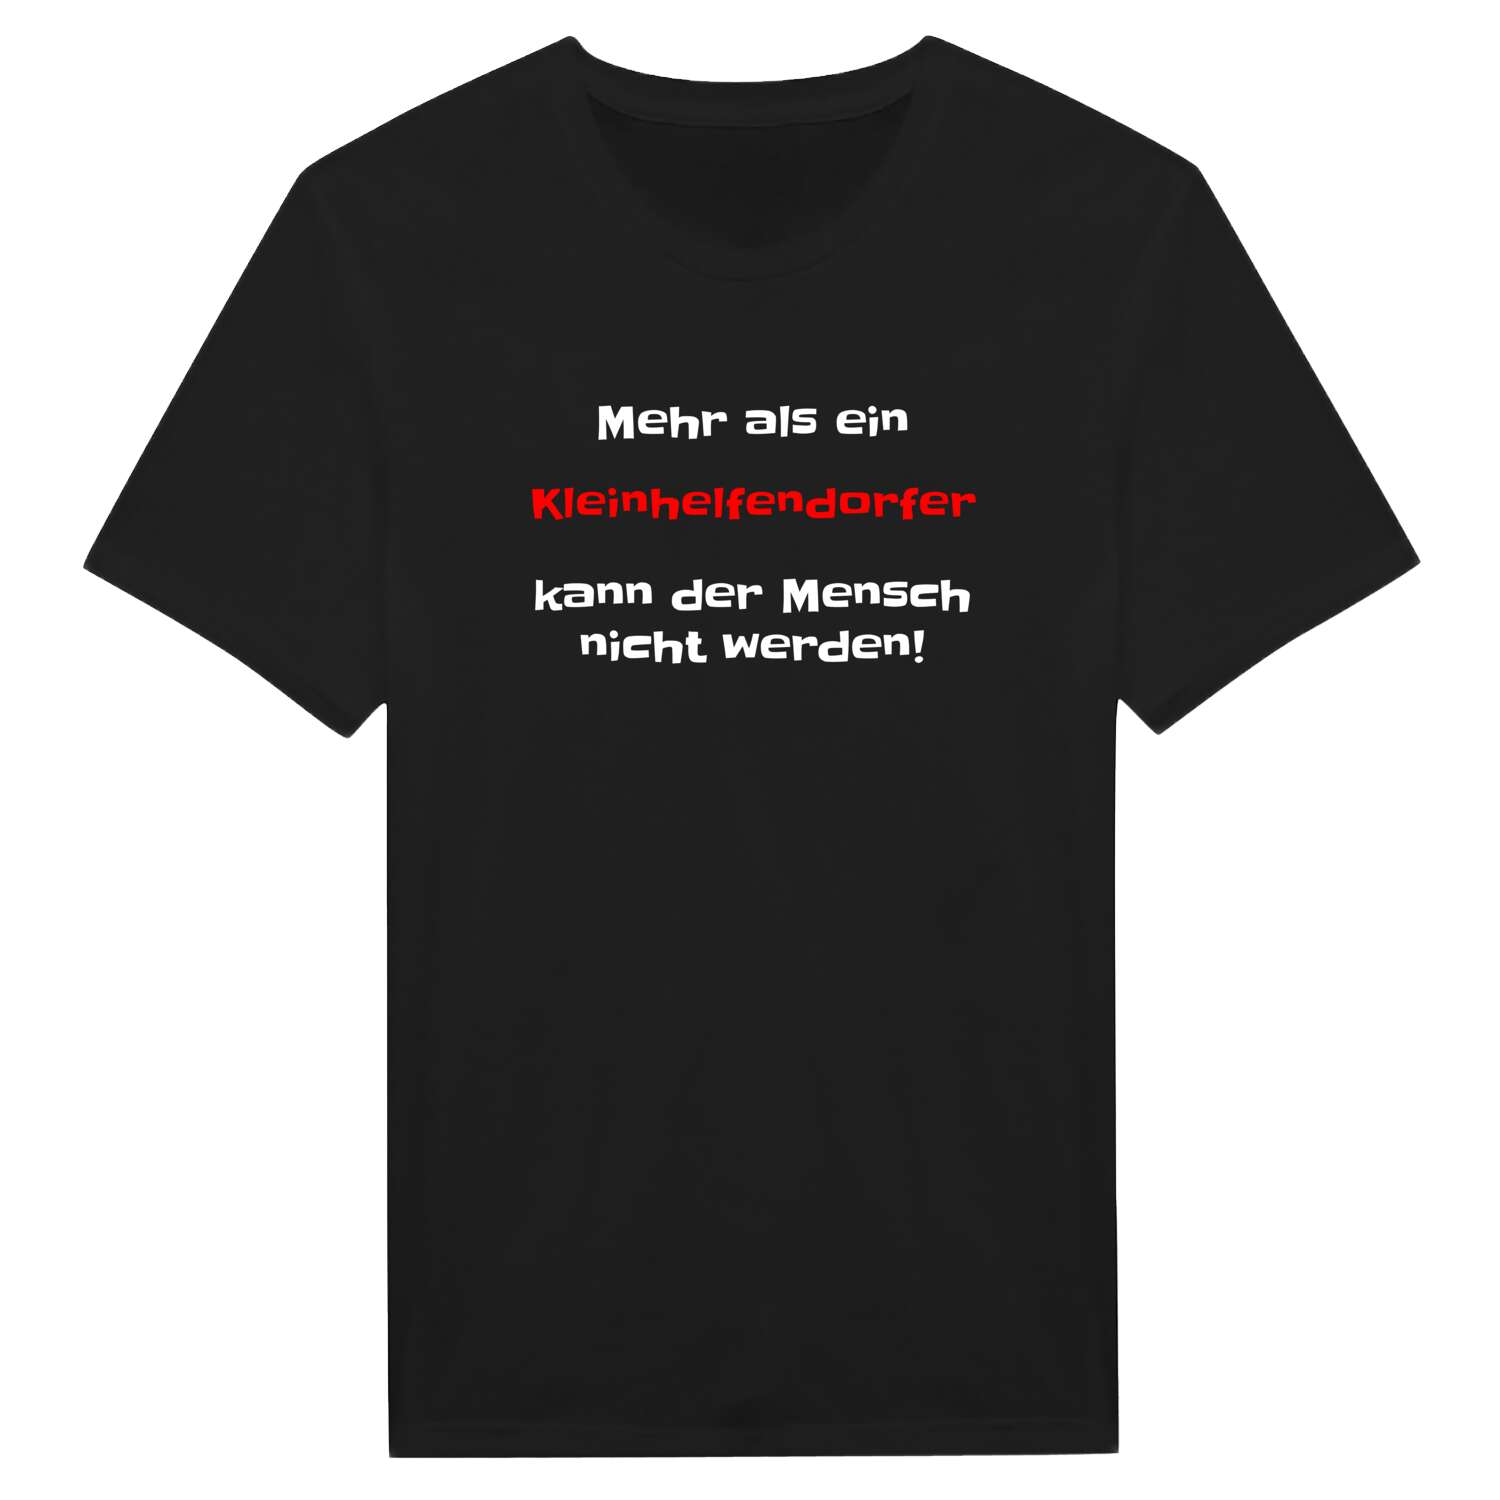 Kleinhelfendorf T-Shirt »Mehr als ein«